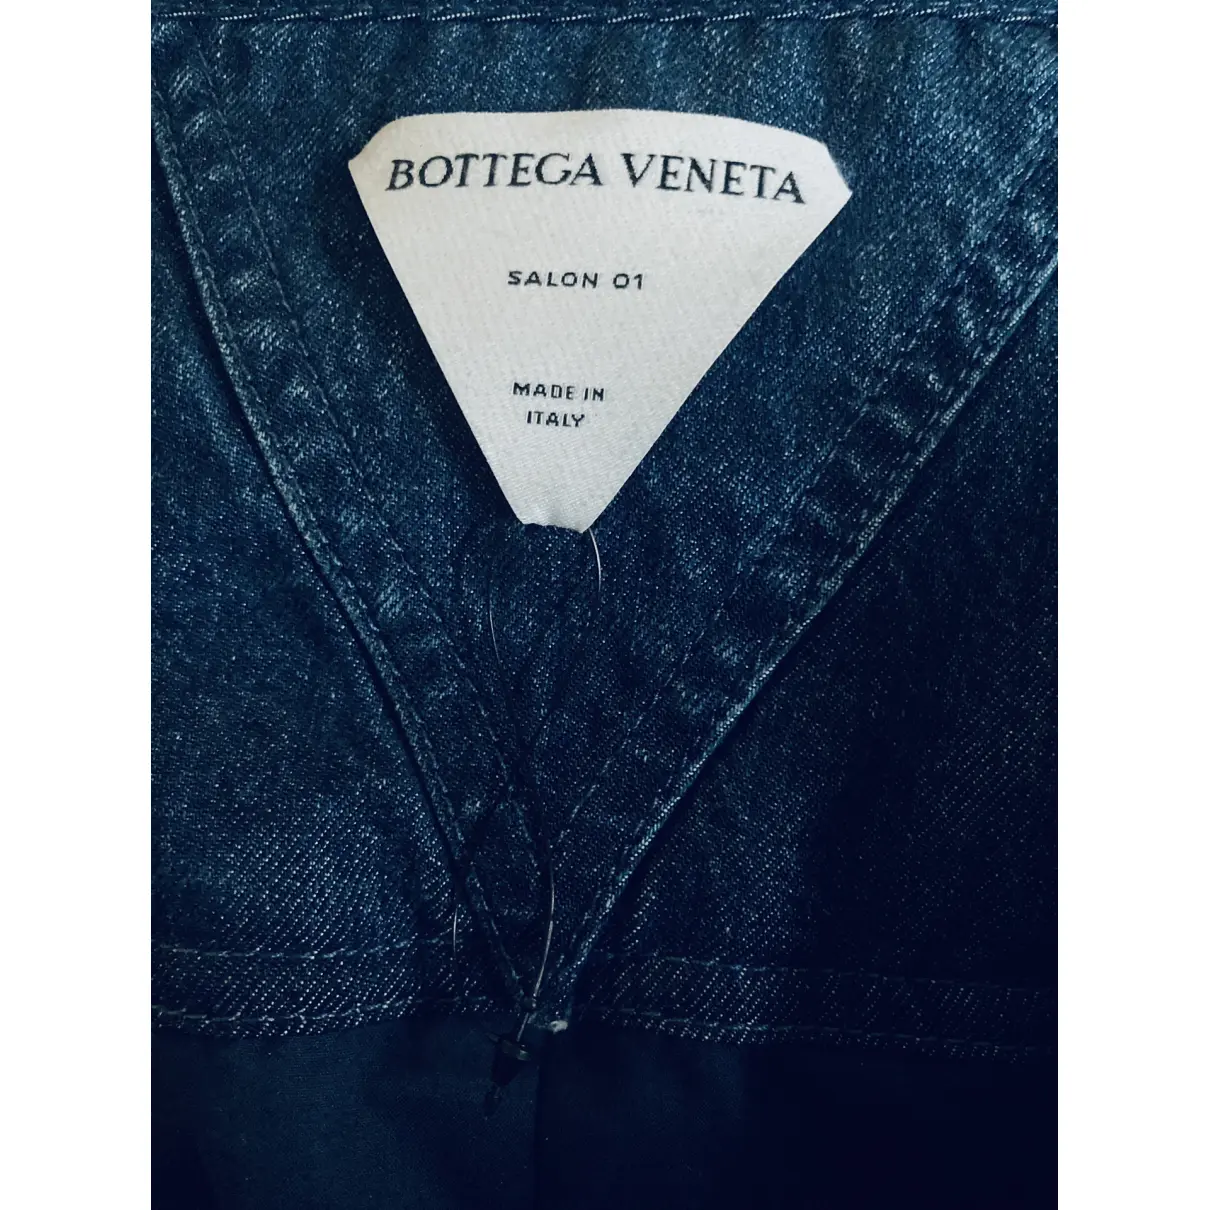 Buy Bottega Veneta Corset online